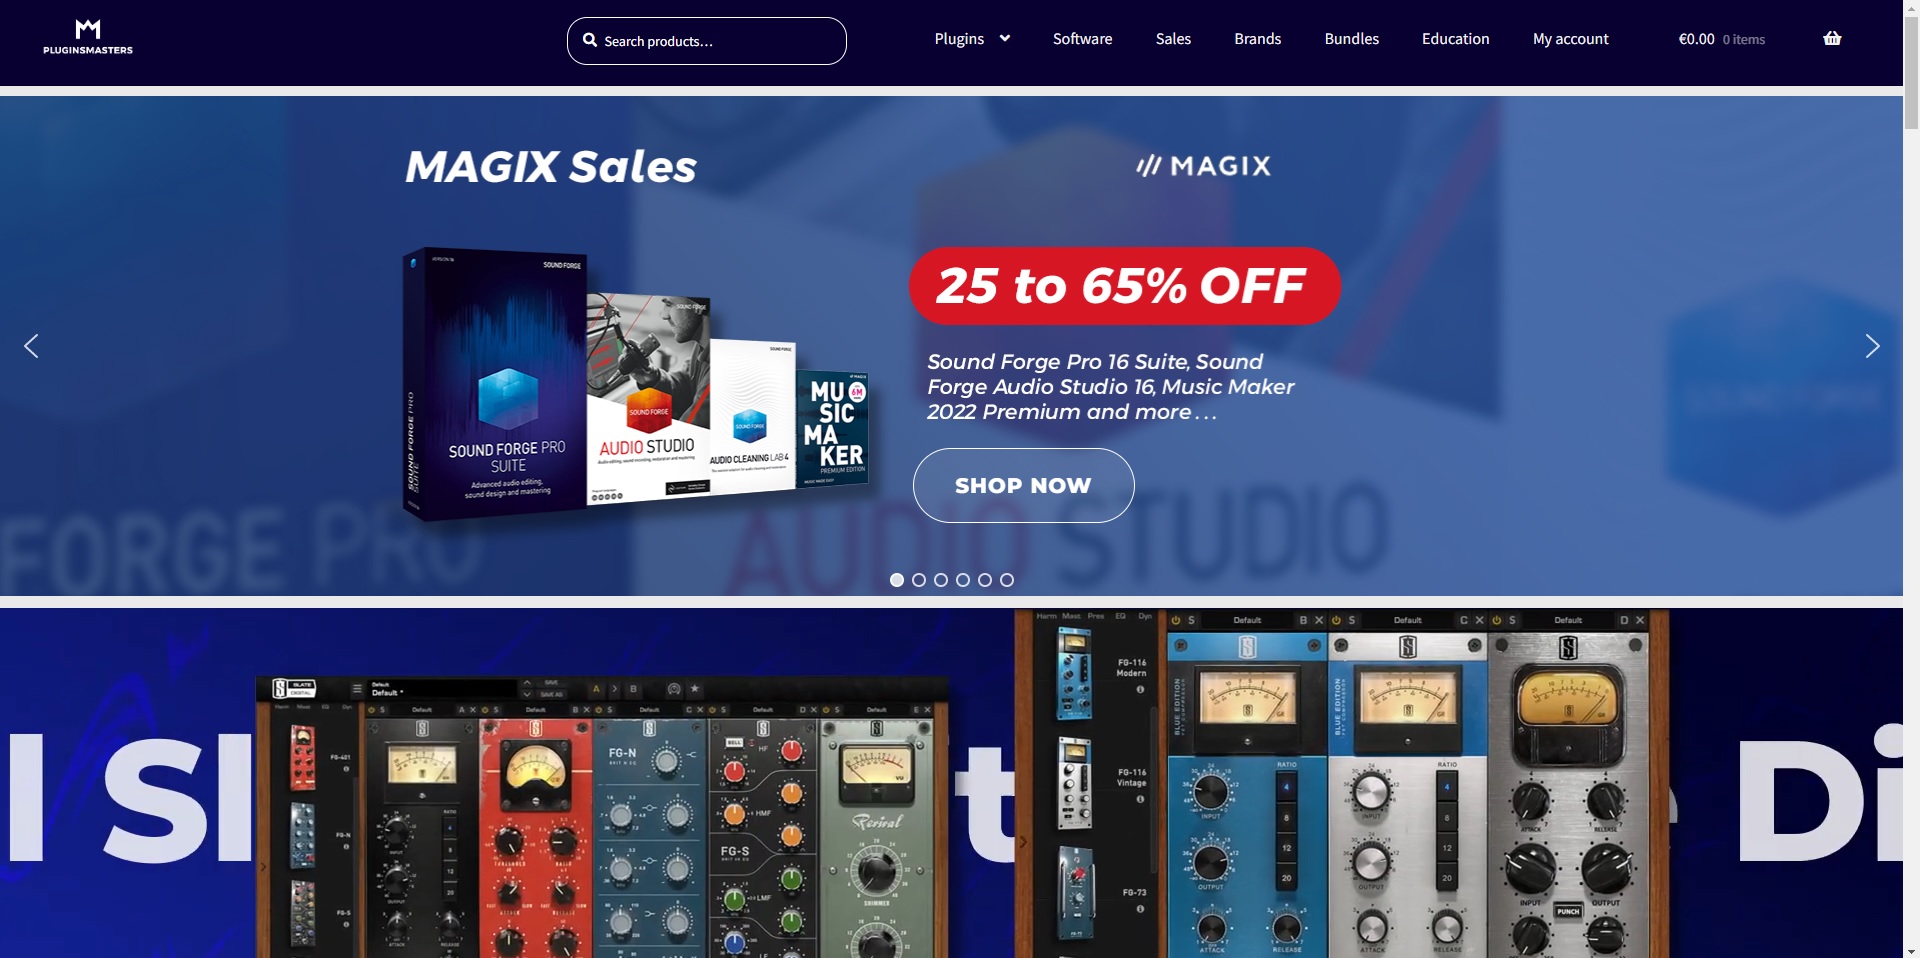 Homepage of pluginsmasters website